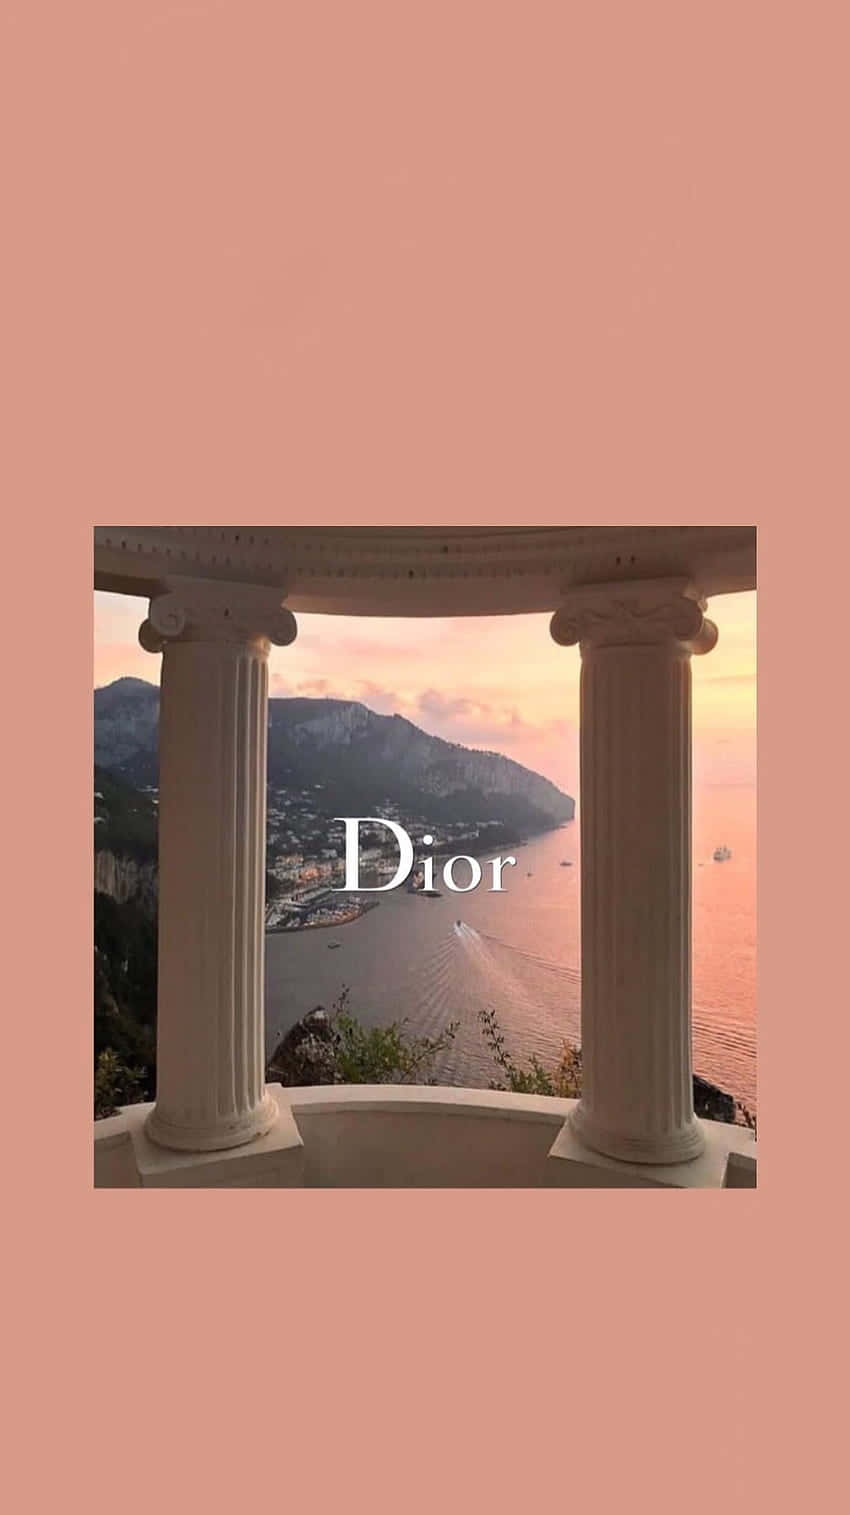 Dior Branded Seaside Sunset Wallpaper